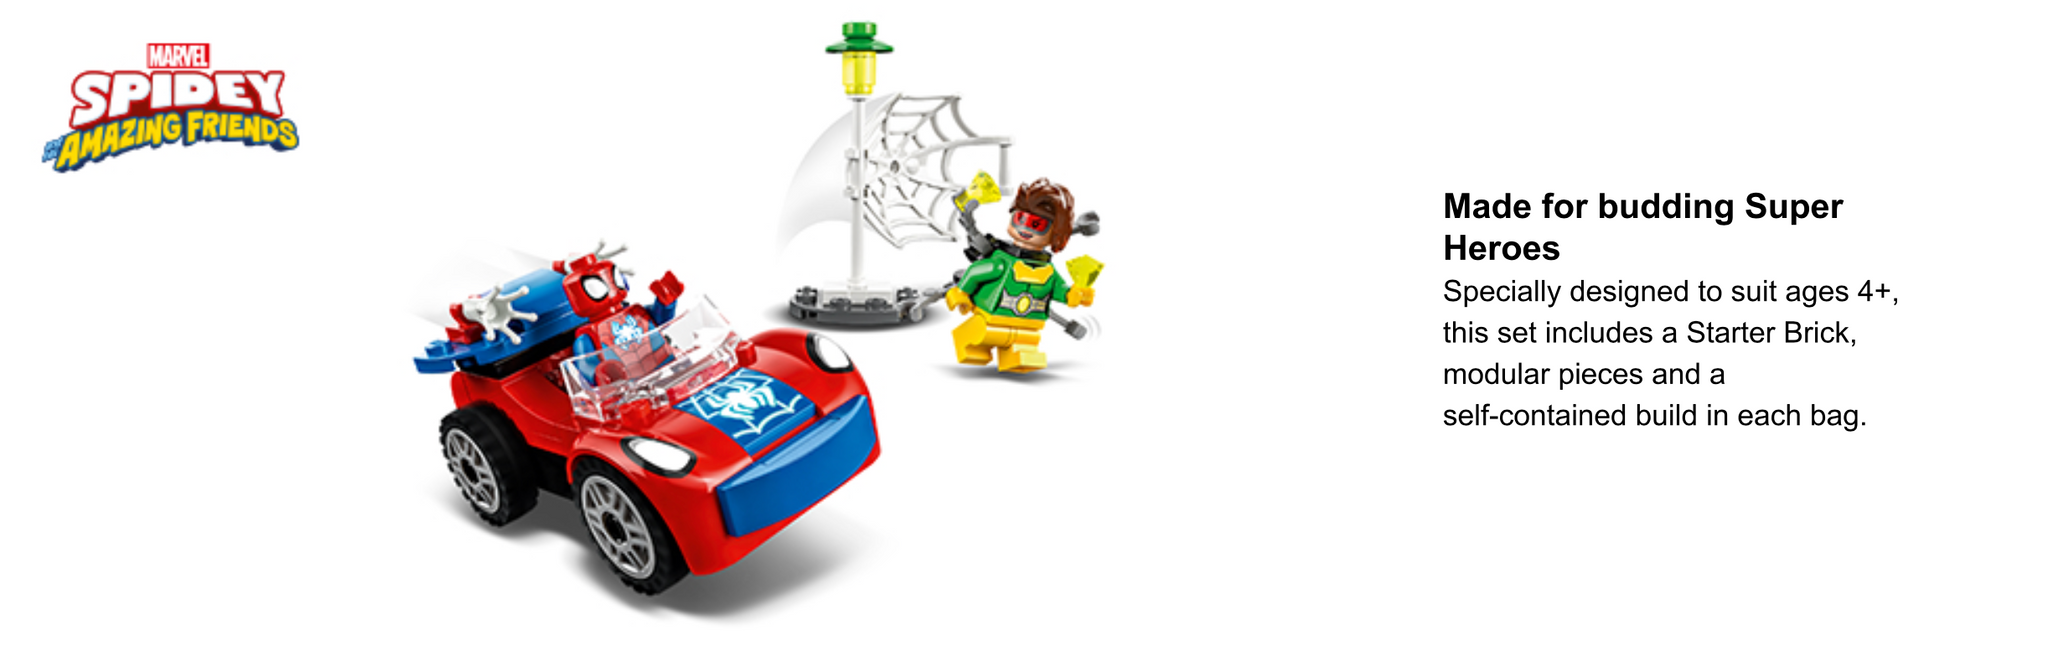 LEGO Spiderman 10789 Spider-Mans Auto und Doc Ock 10789